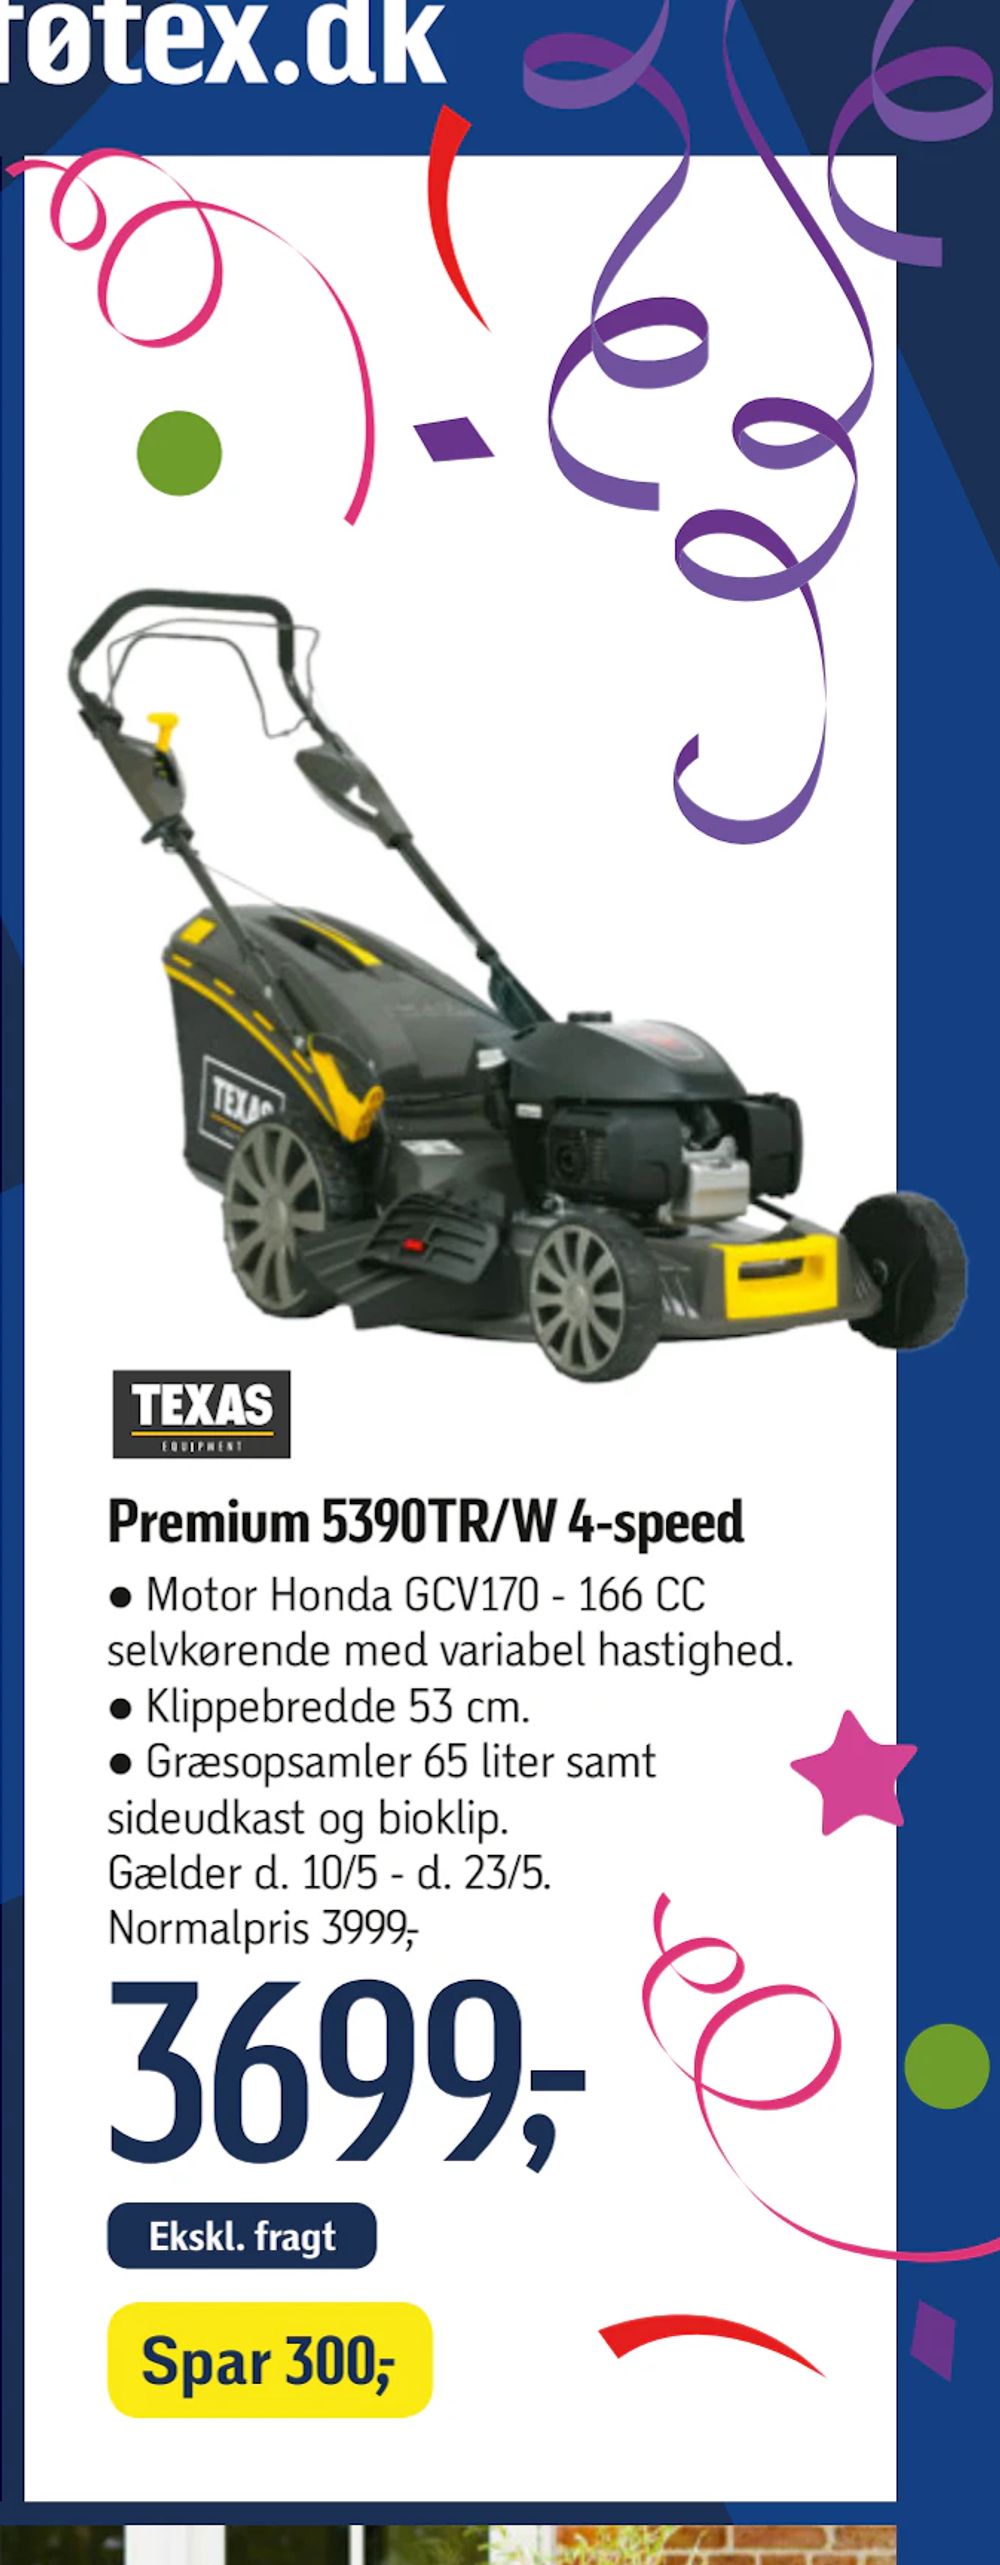 Tilbud på Premium 5390TR/W 4-speed fra føtex til 3.699 kr.